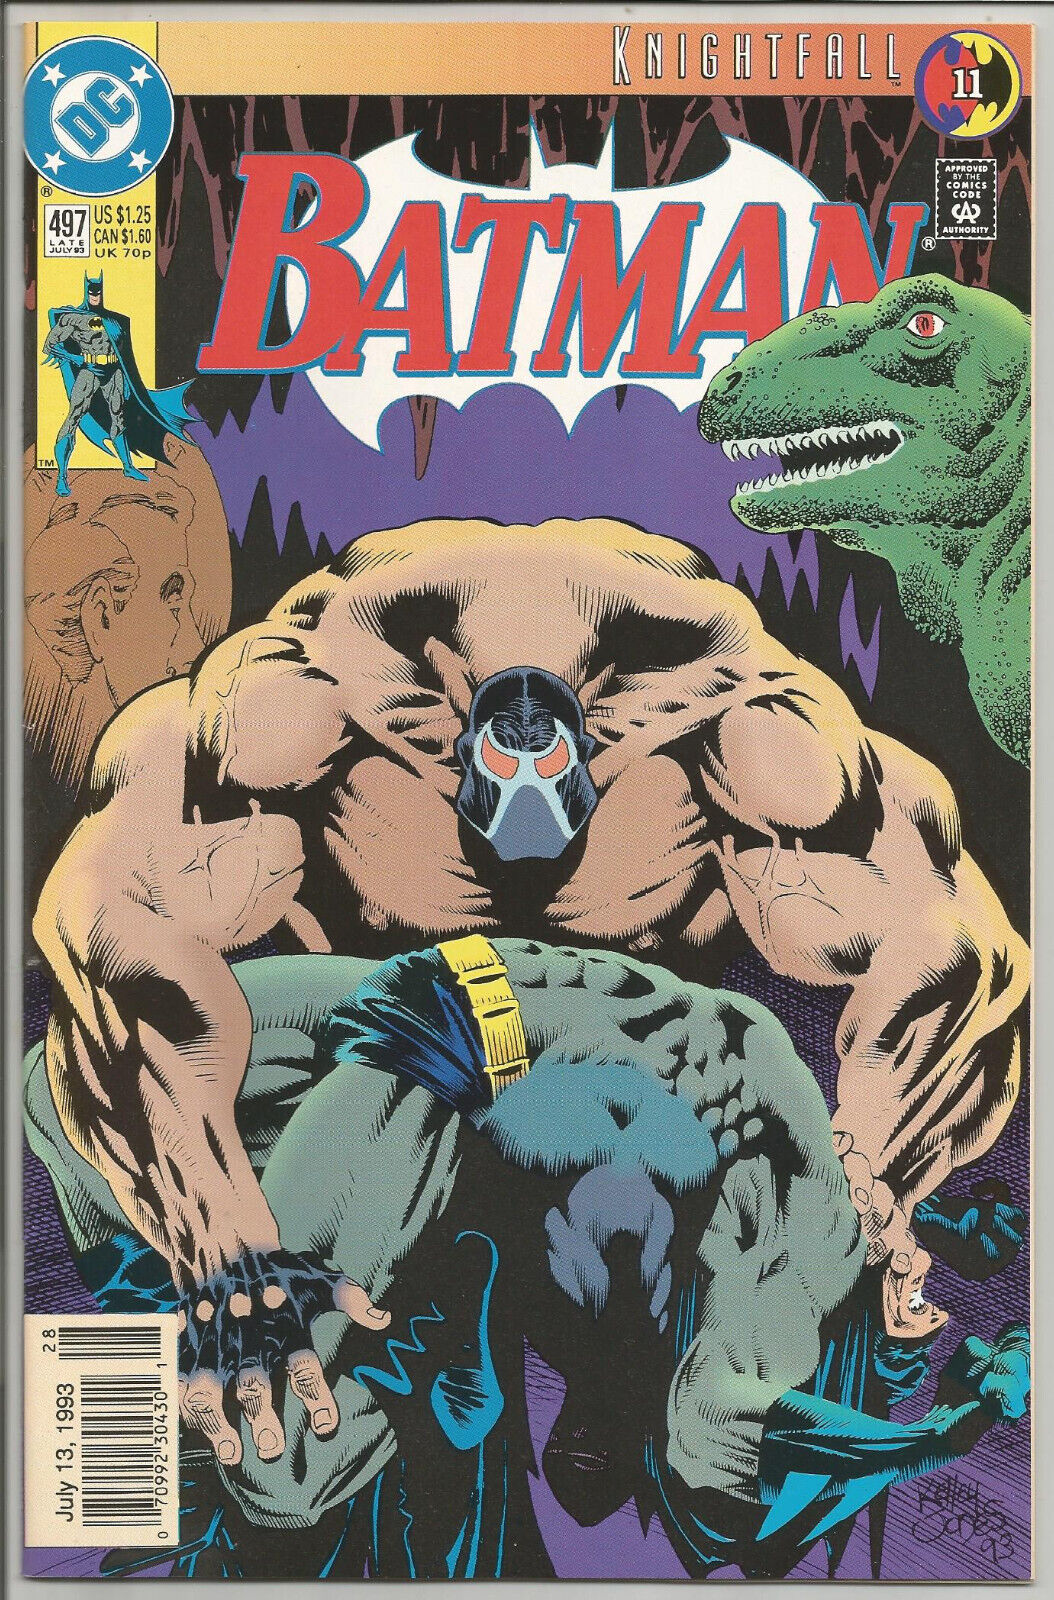 BATMAN #497 Newsstand (1993, DC) Knightfall (Part 11) BANE Breaks Batmans Back